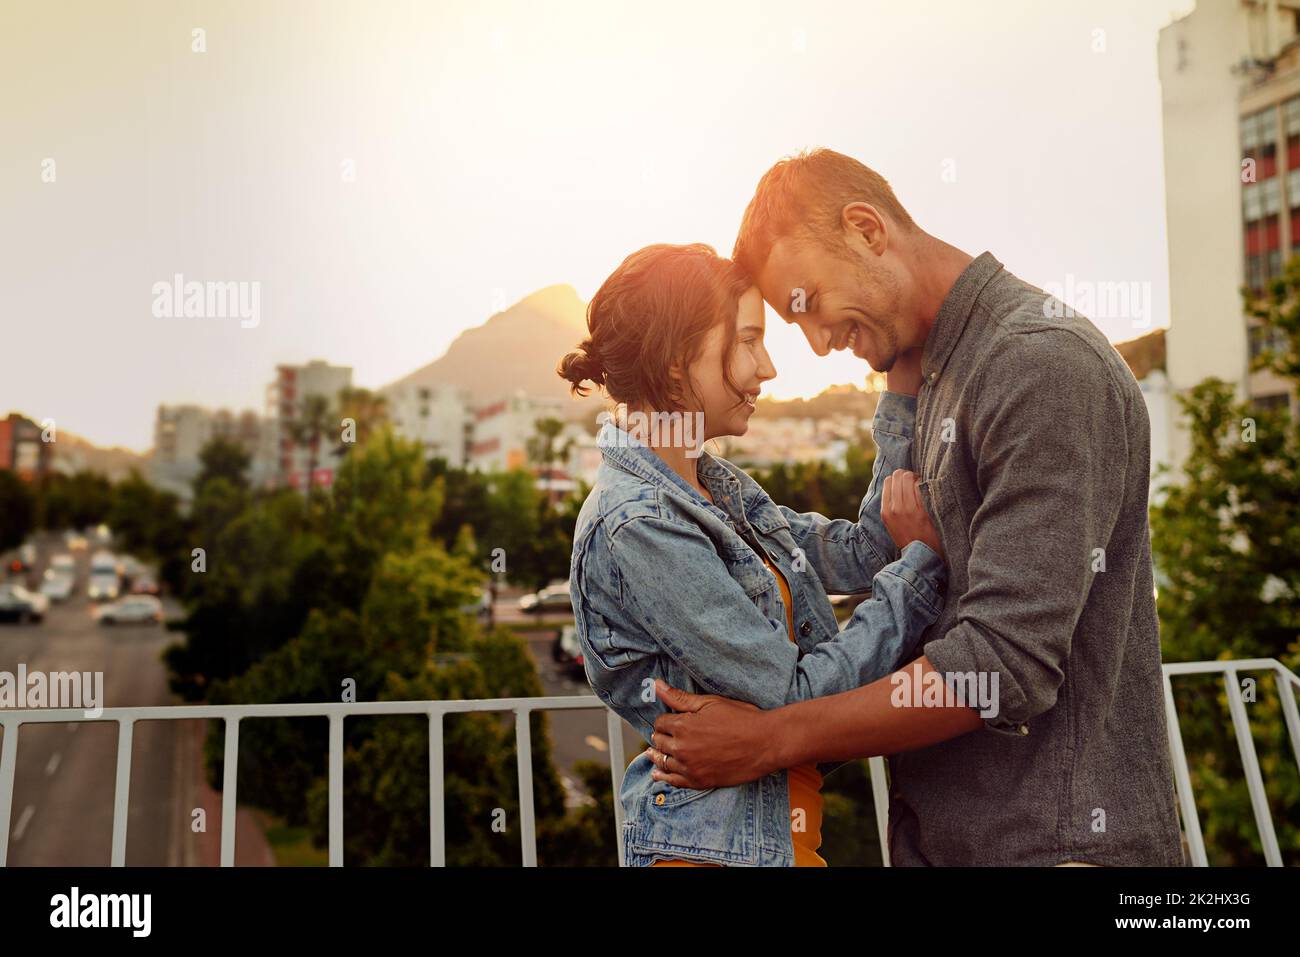 Mein Herz gehört dir. Aufnahme eines glücklichen jungen Paares, das einen romantischen Moment in der Stadt genießt. Stockfoto